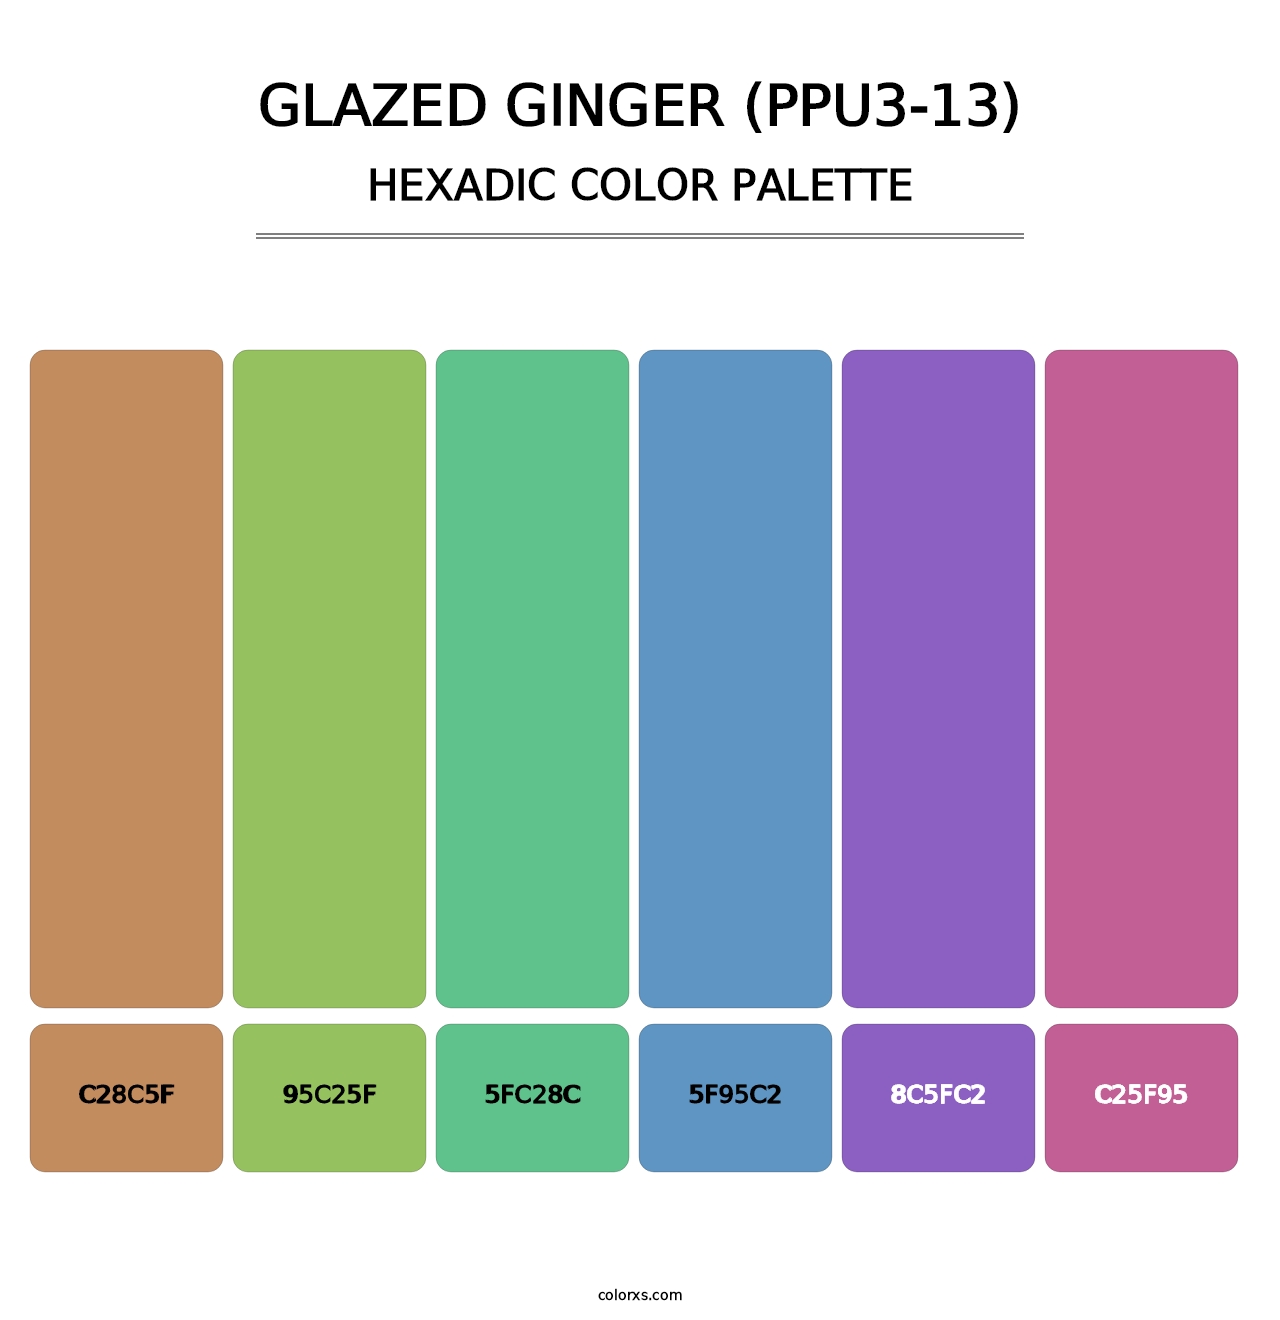 Glazed Ginger (PPU3-13) - Hexadic Color Palette